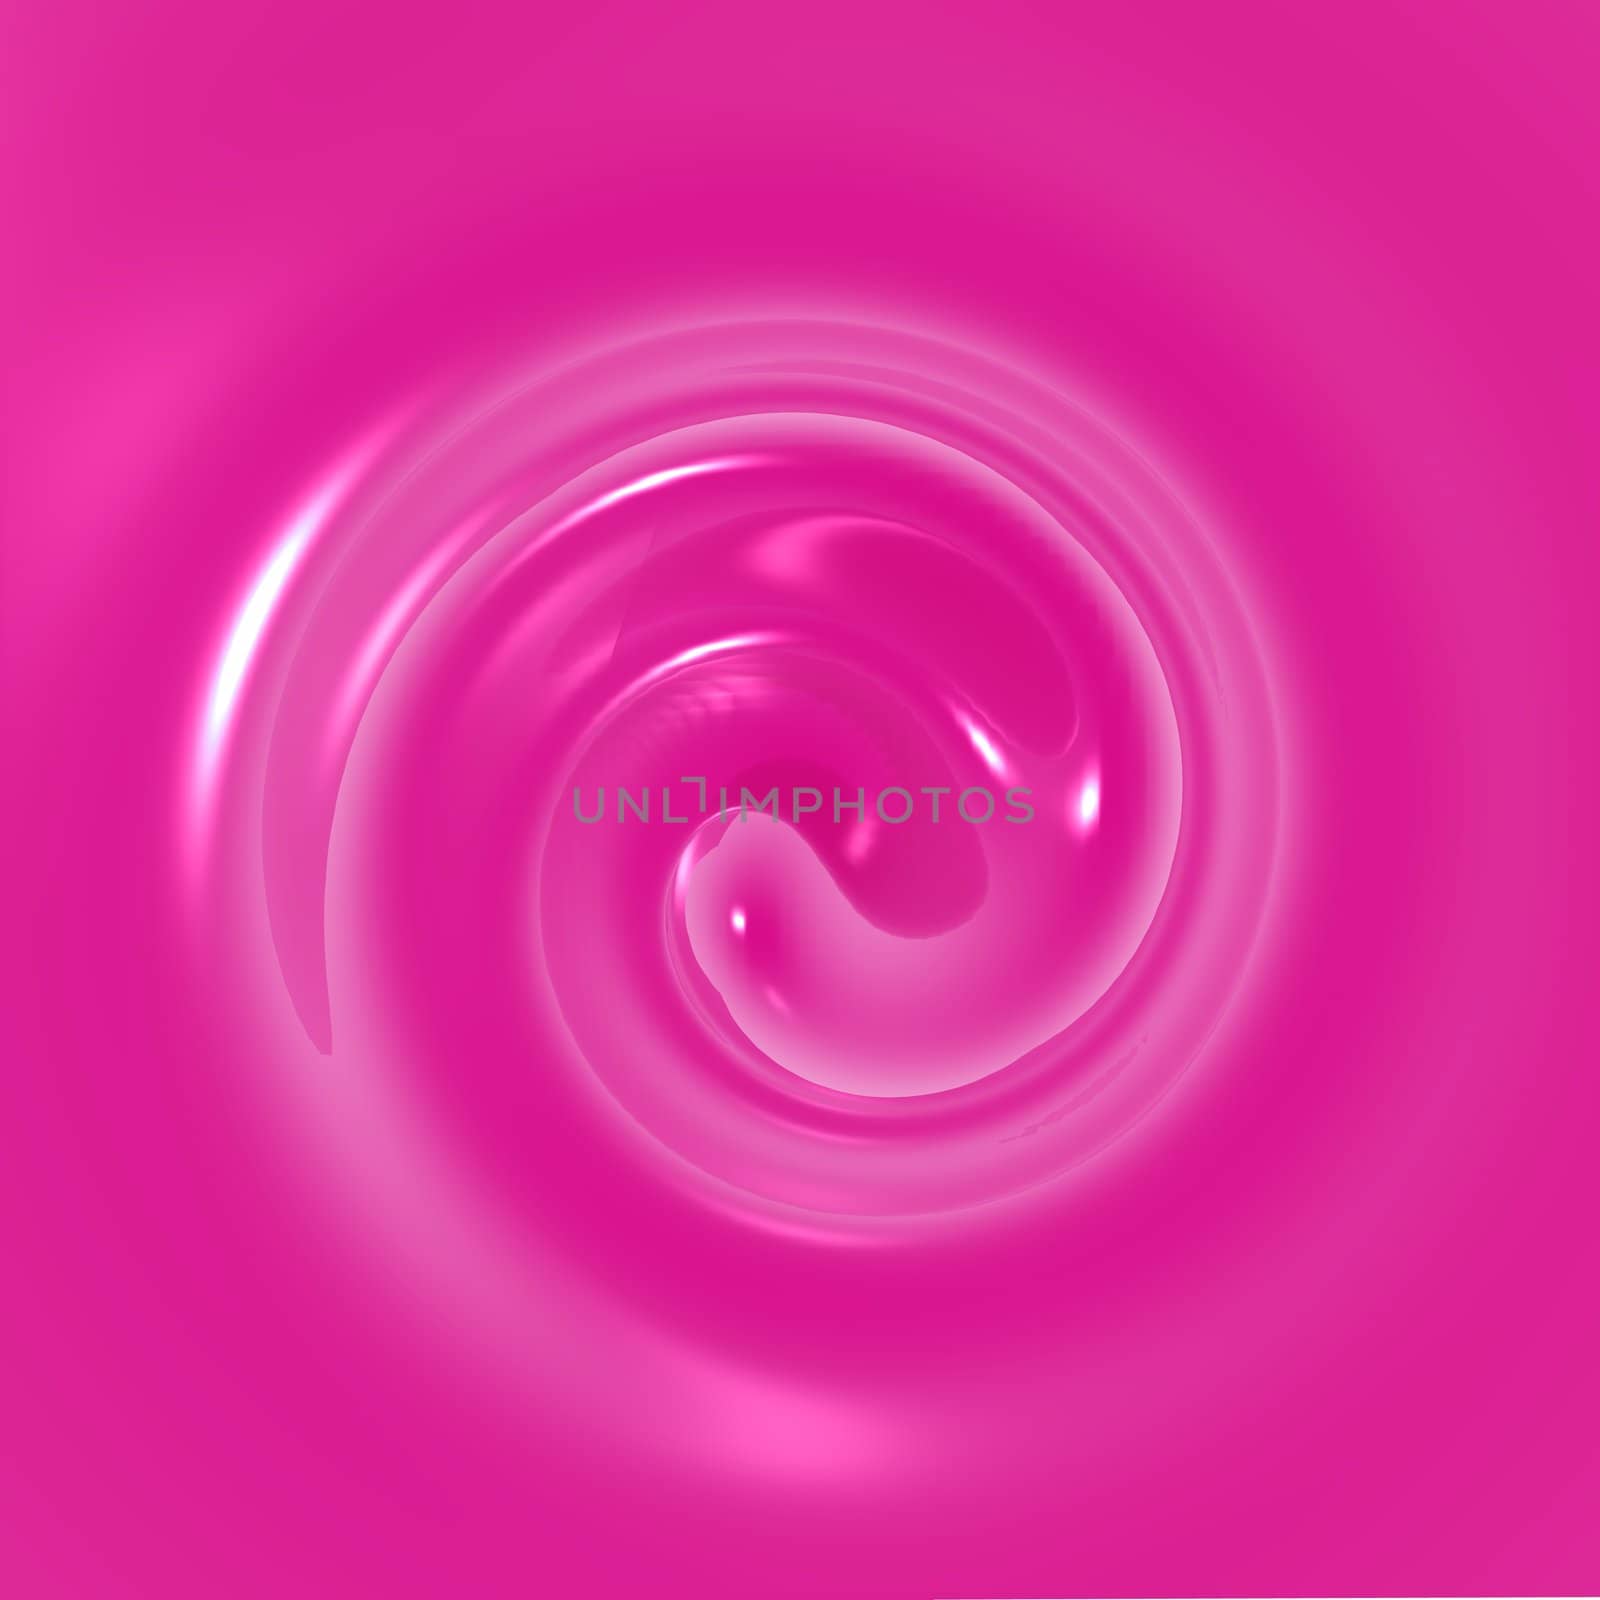 An illustration of purple fluid swirling.